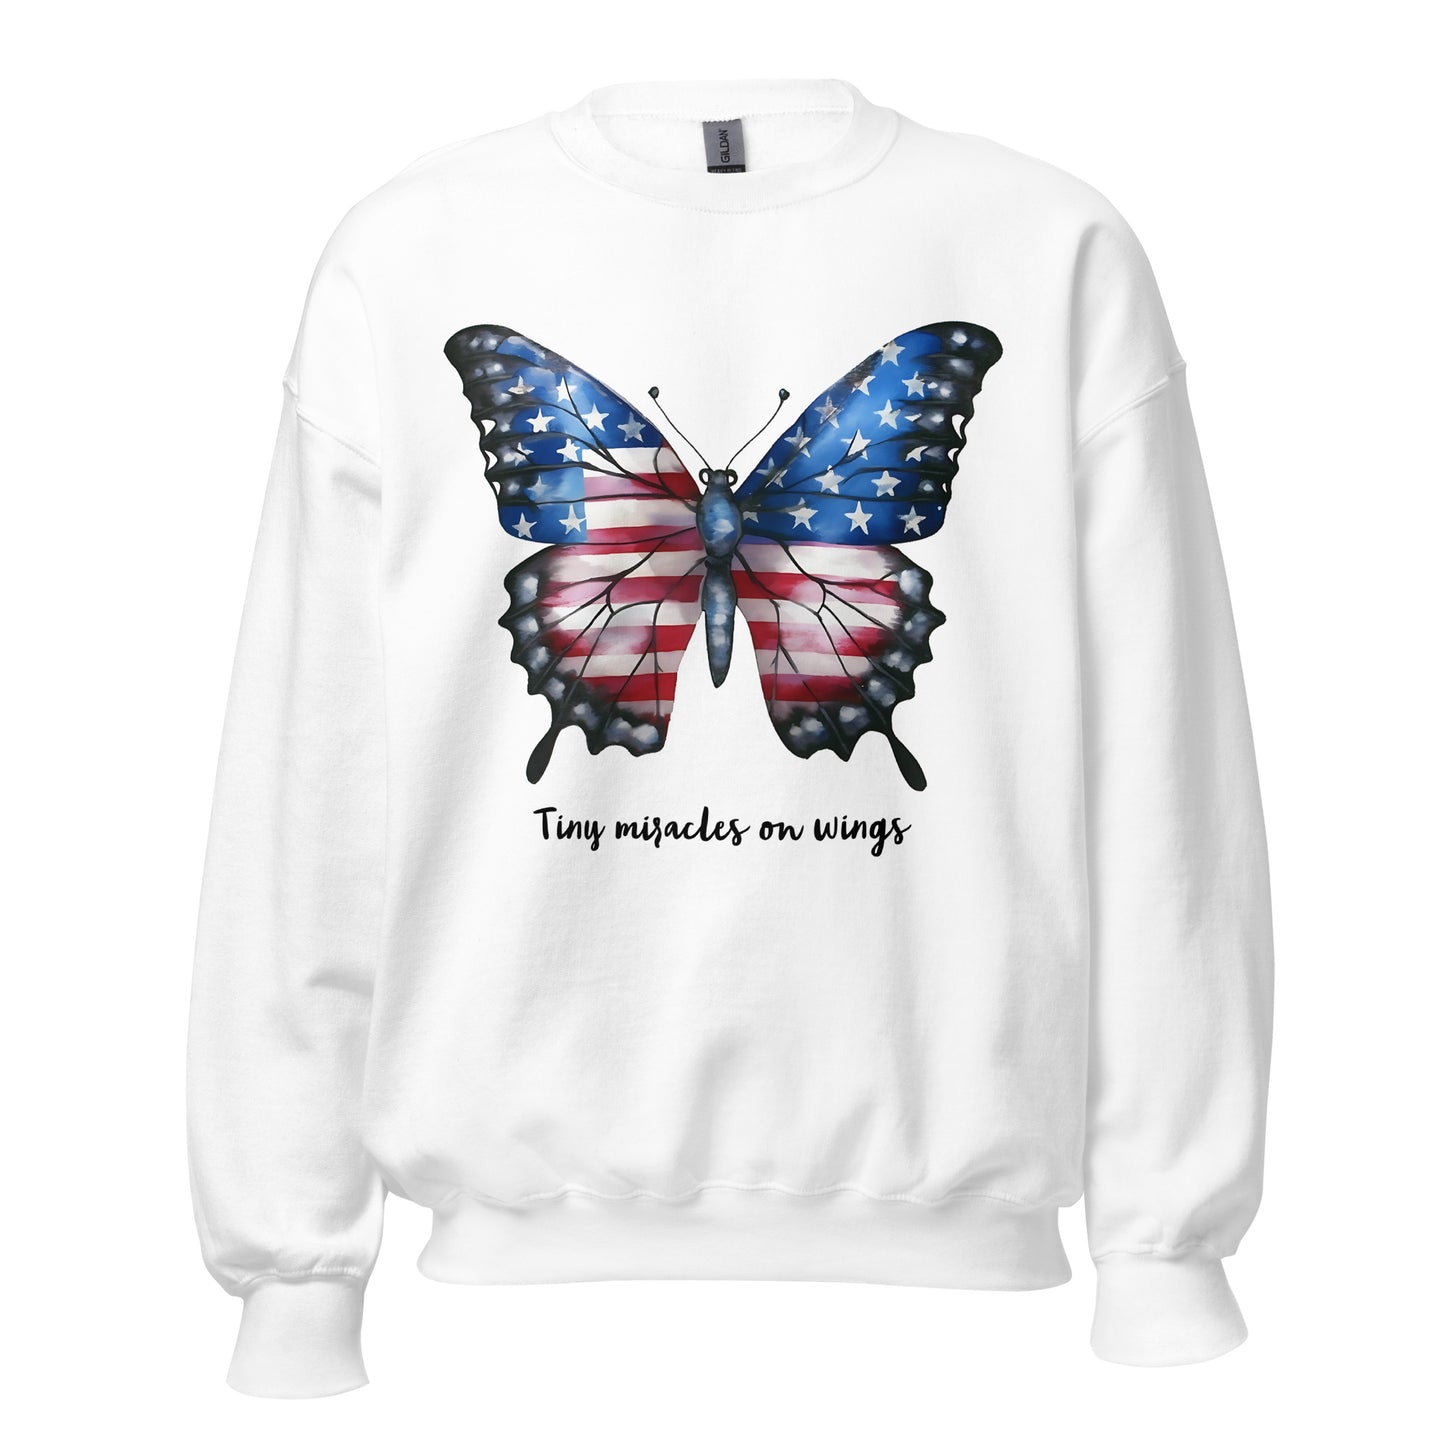 White Butterfly Sweatshirt For Women / Custom Text Sweatshirt For The Patriotic Butterfly Lover